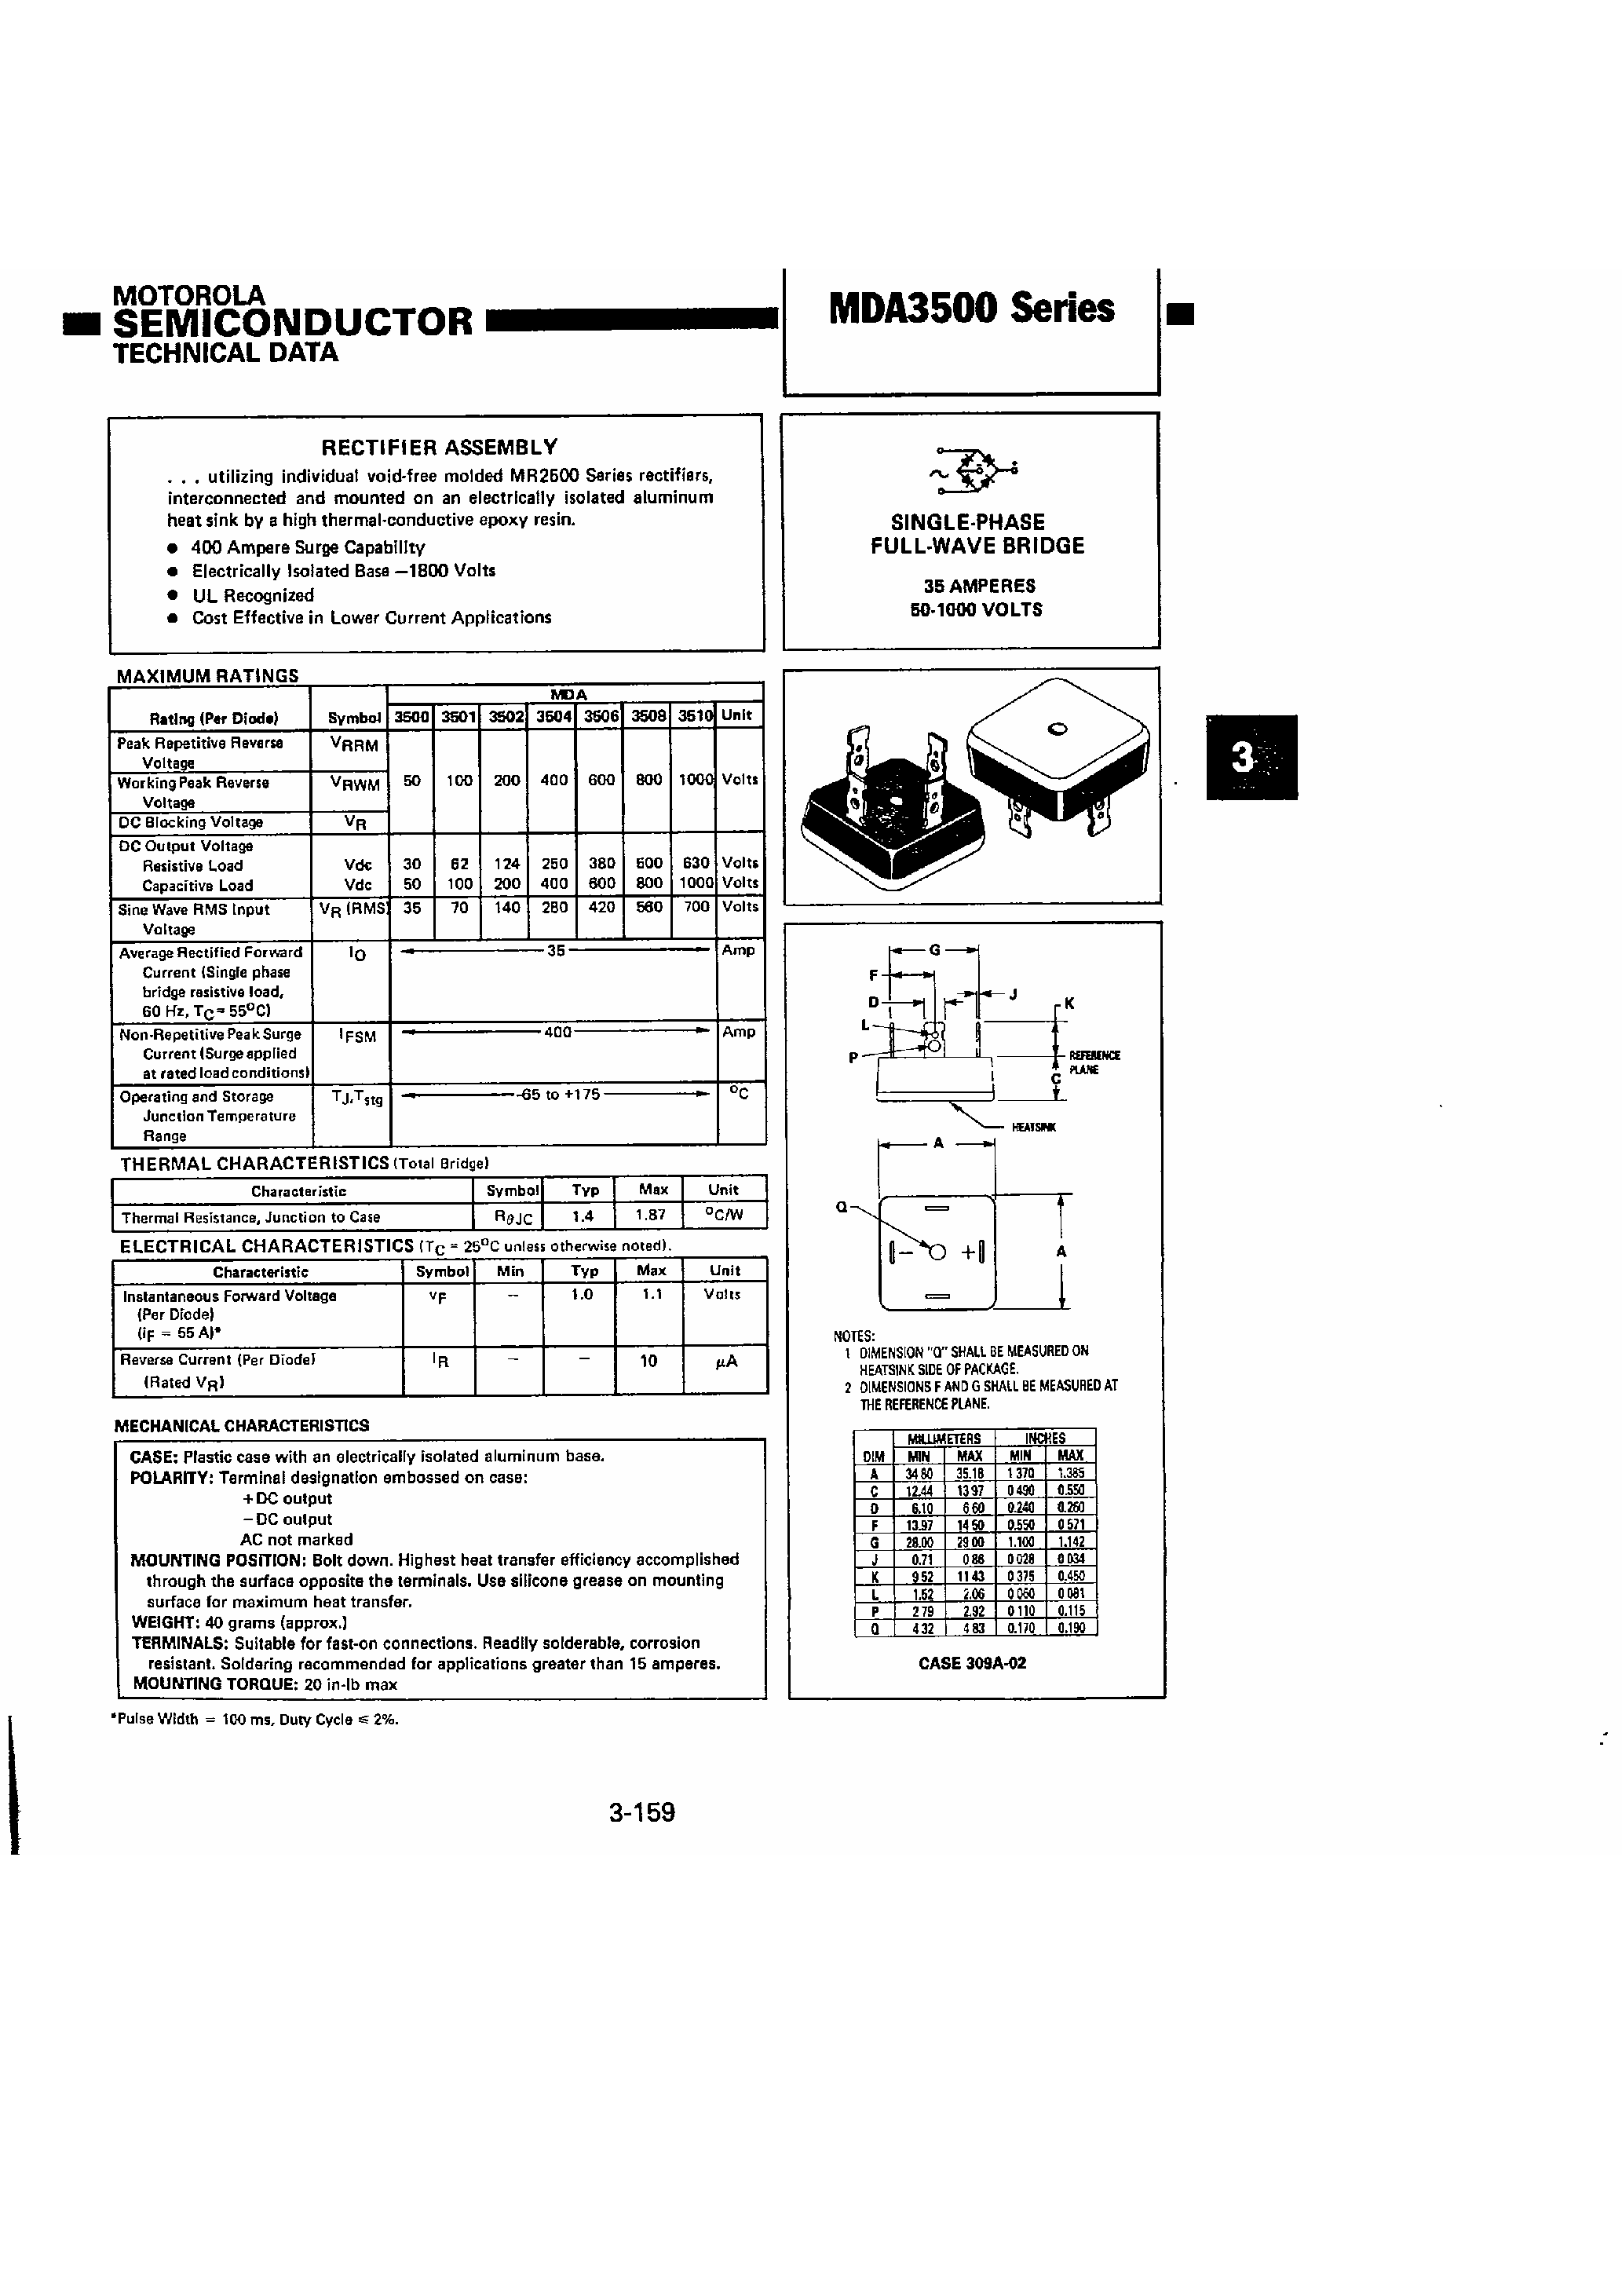 Datasheet MDA3504 - Single-Phase Full-wave Bridge page 1